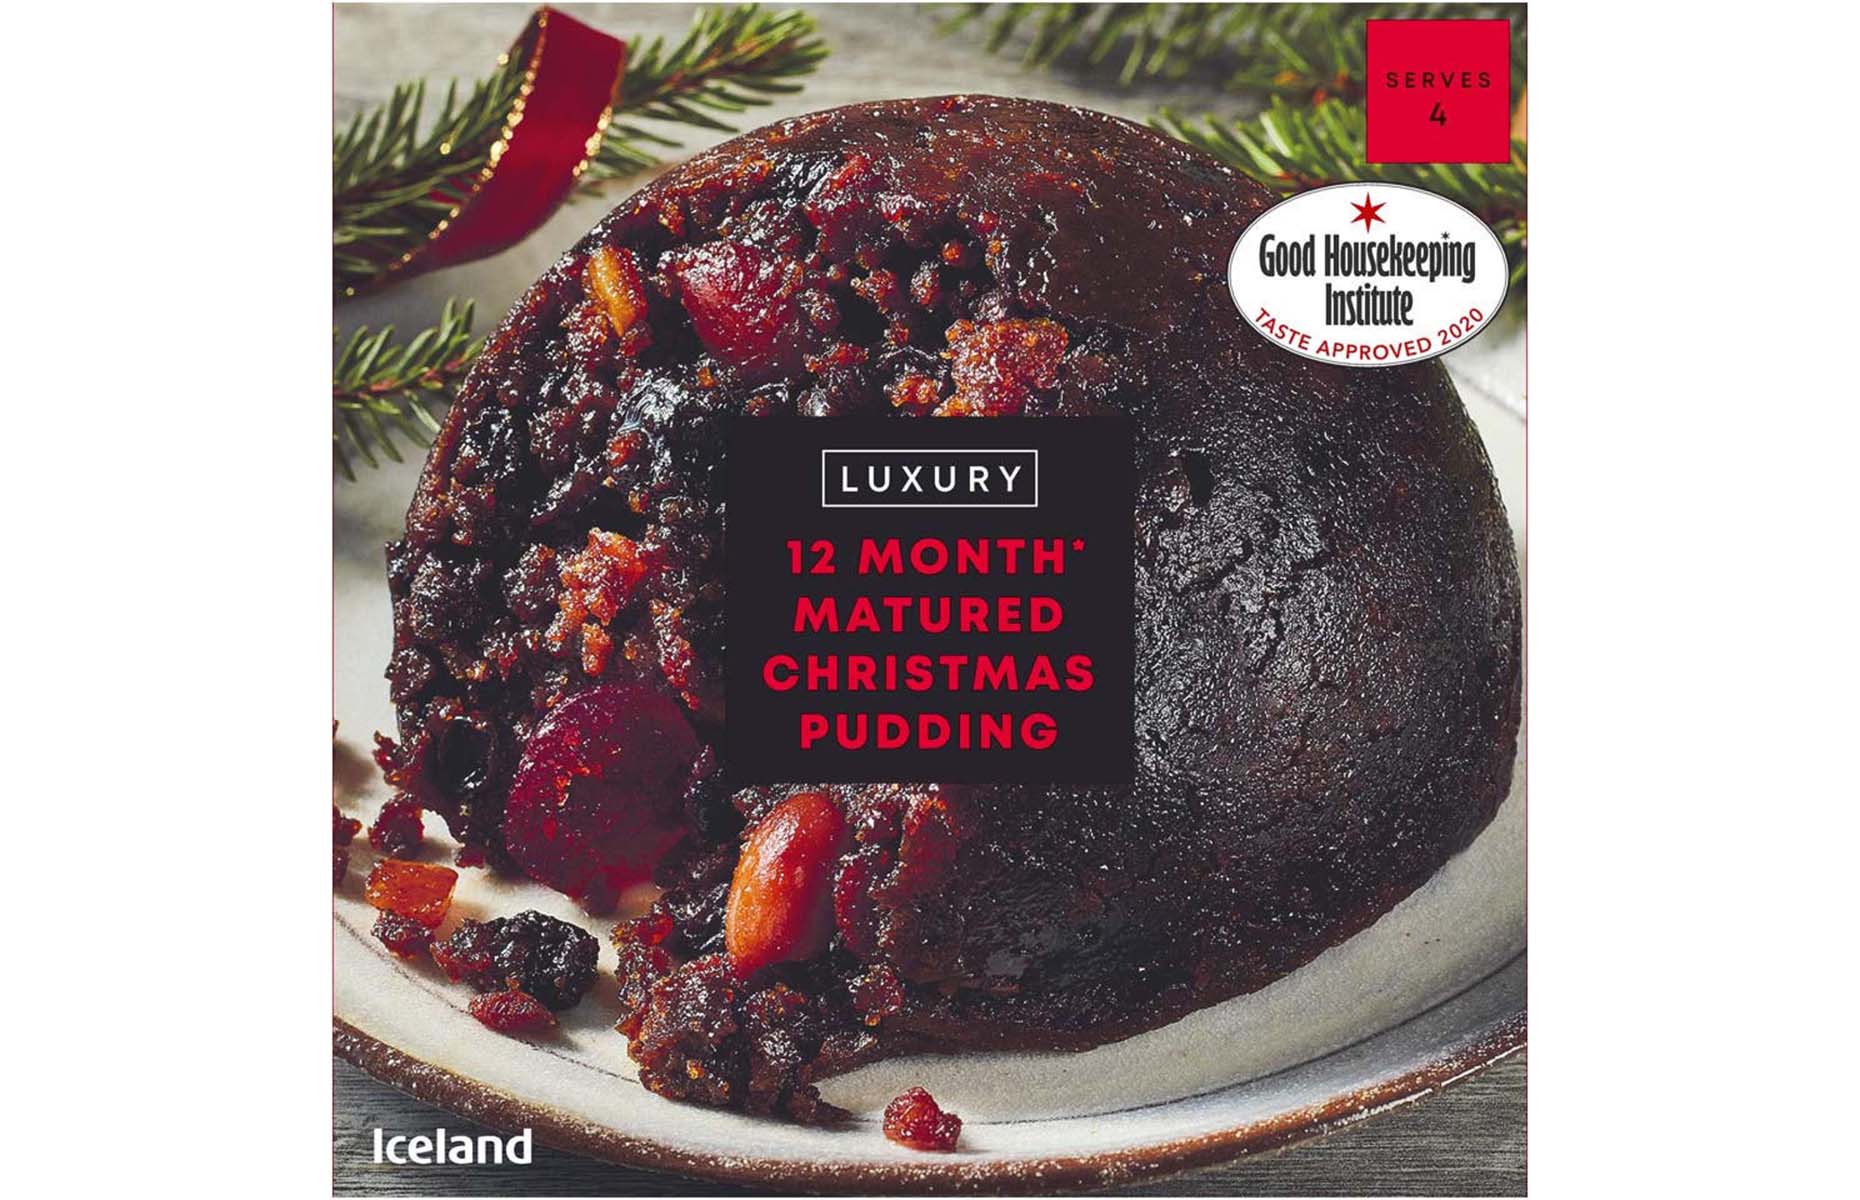 Iceland Luxury Christmas pudding 2021